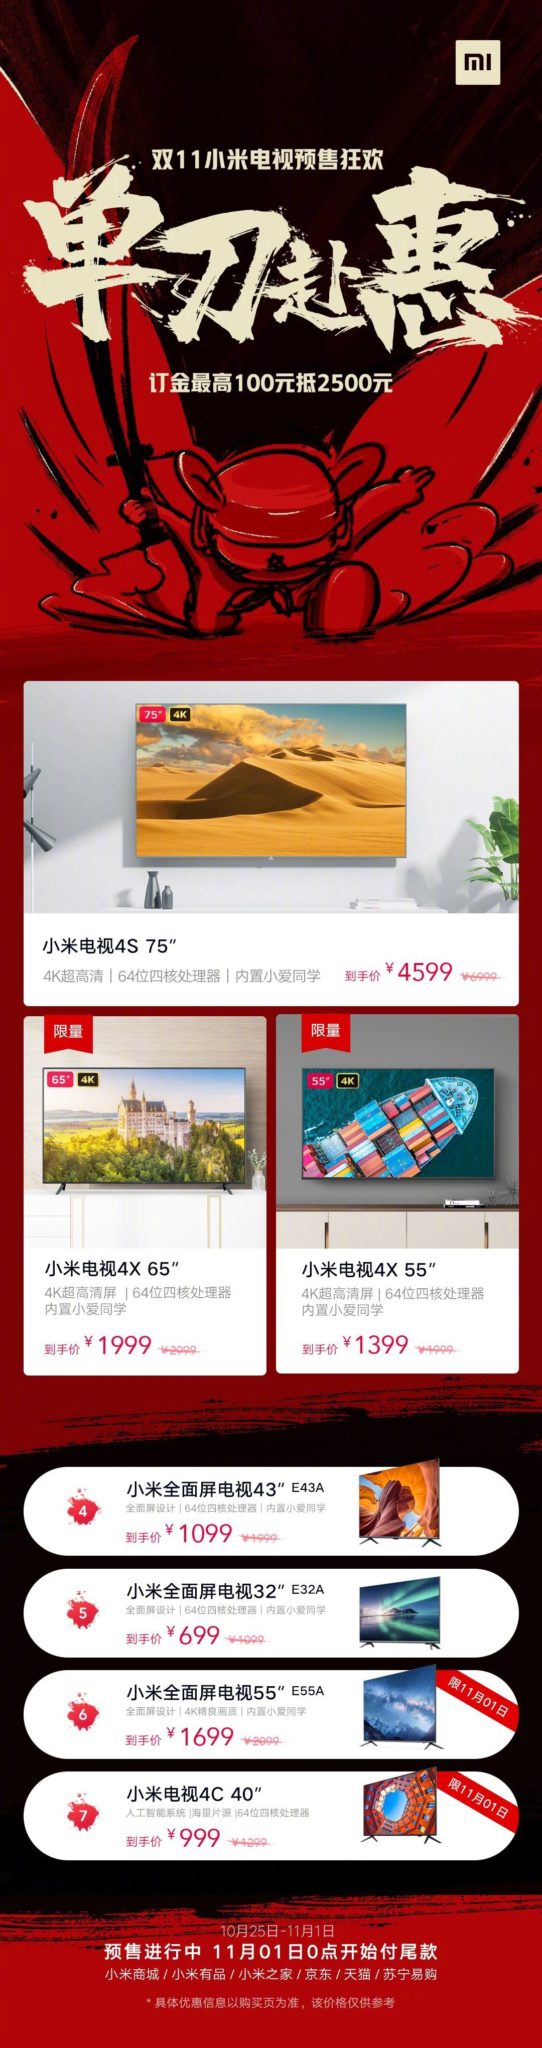 Xiaomi розпочала грандіозну розпродажу телевізорів